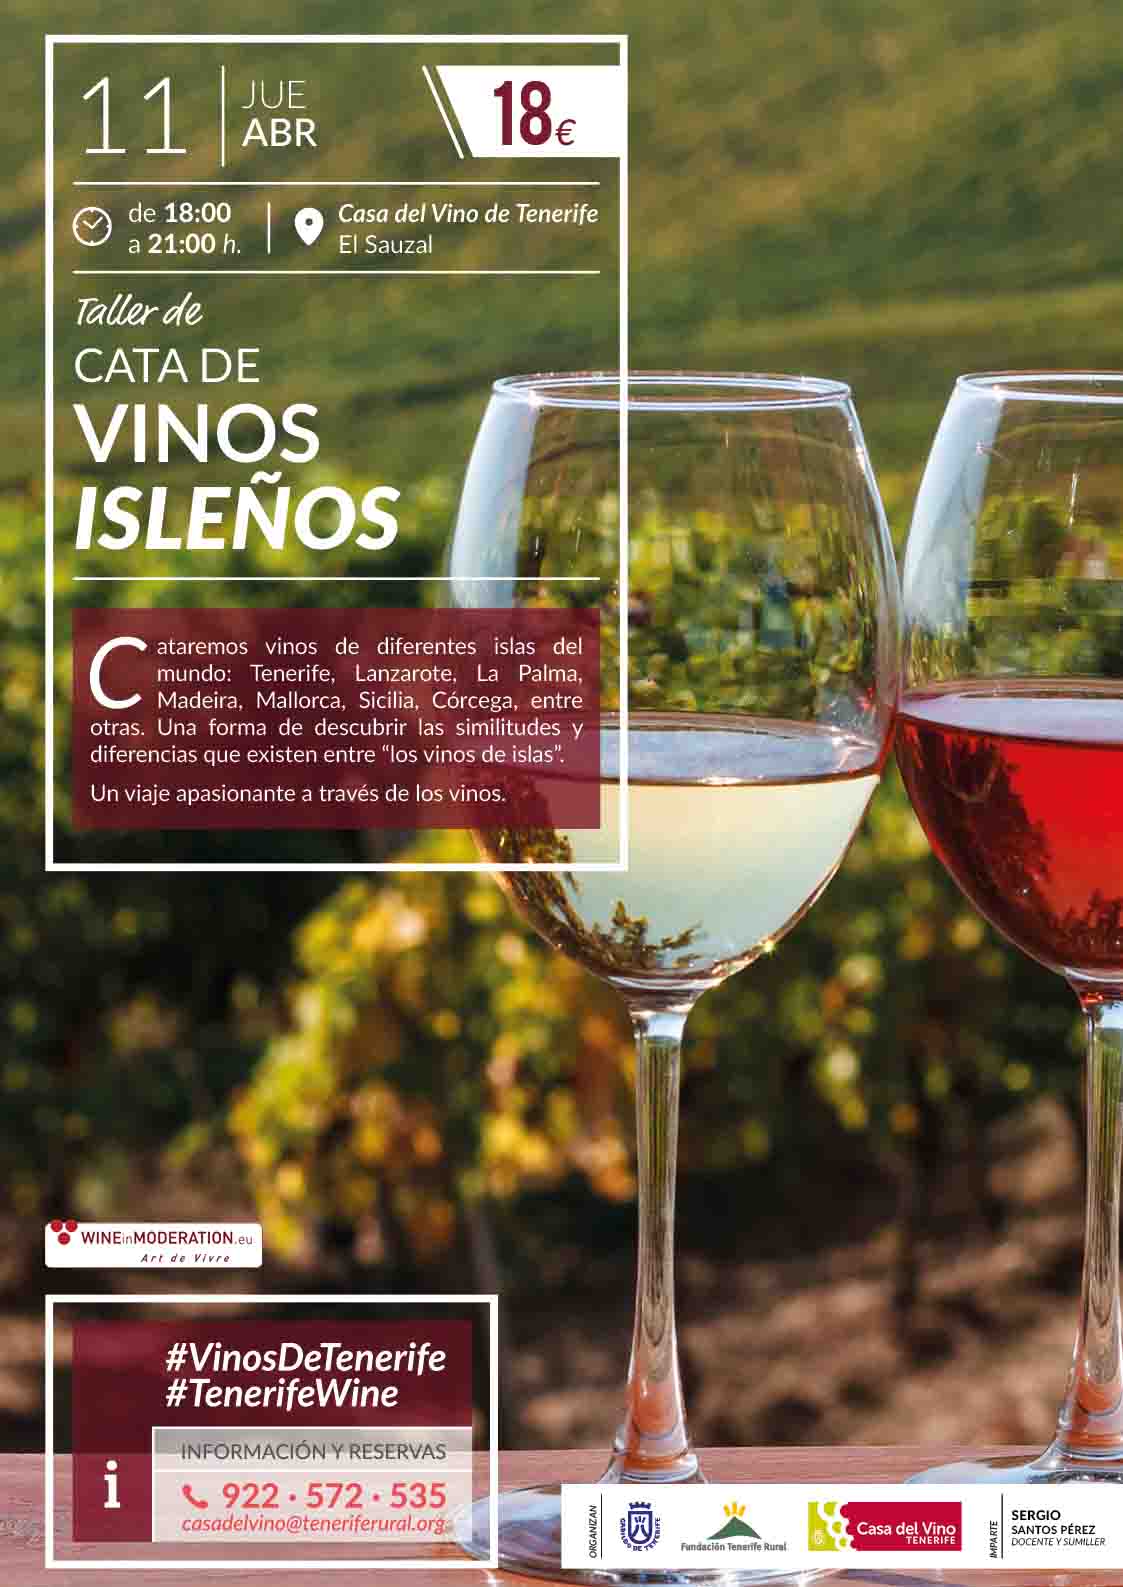 Taller de Cata de Vinos Isleños. Jueves 11 de abril en la Casa del Vino de Tenerife en El Sauzal.